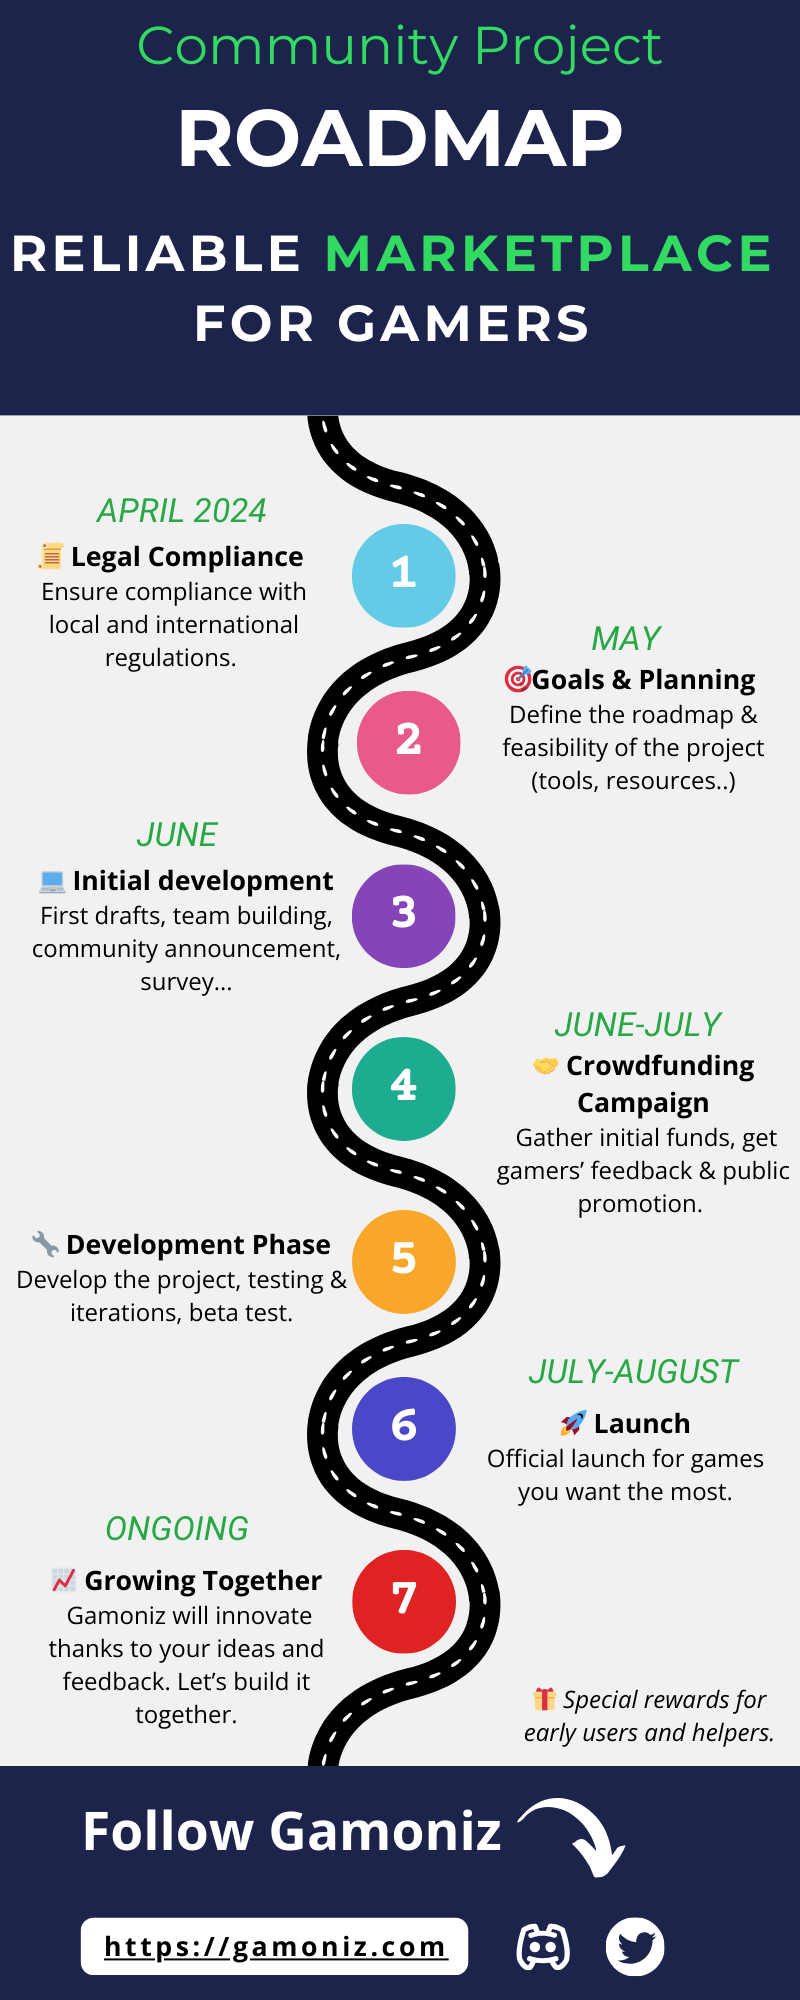 Roadmap Timeline 2